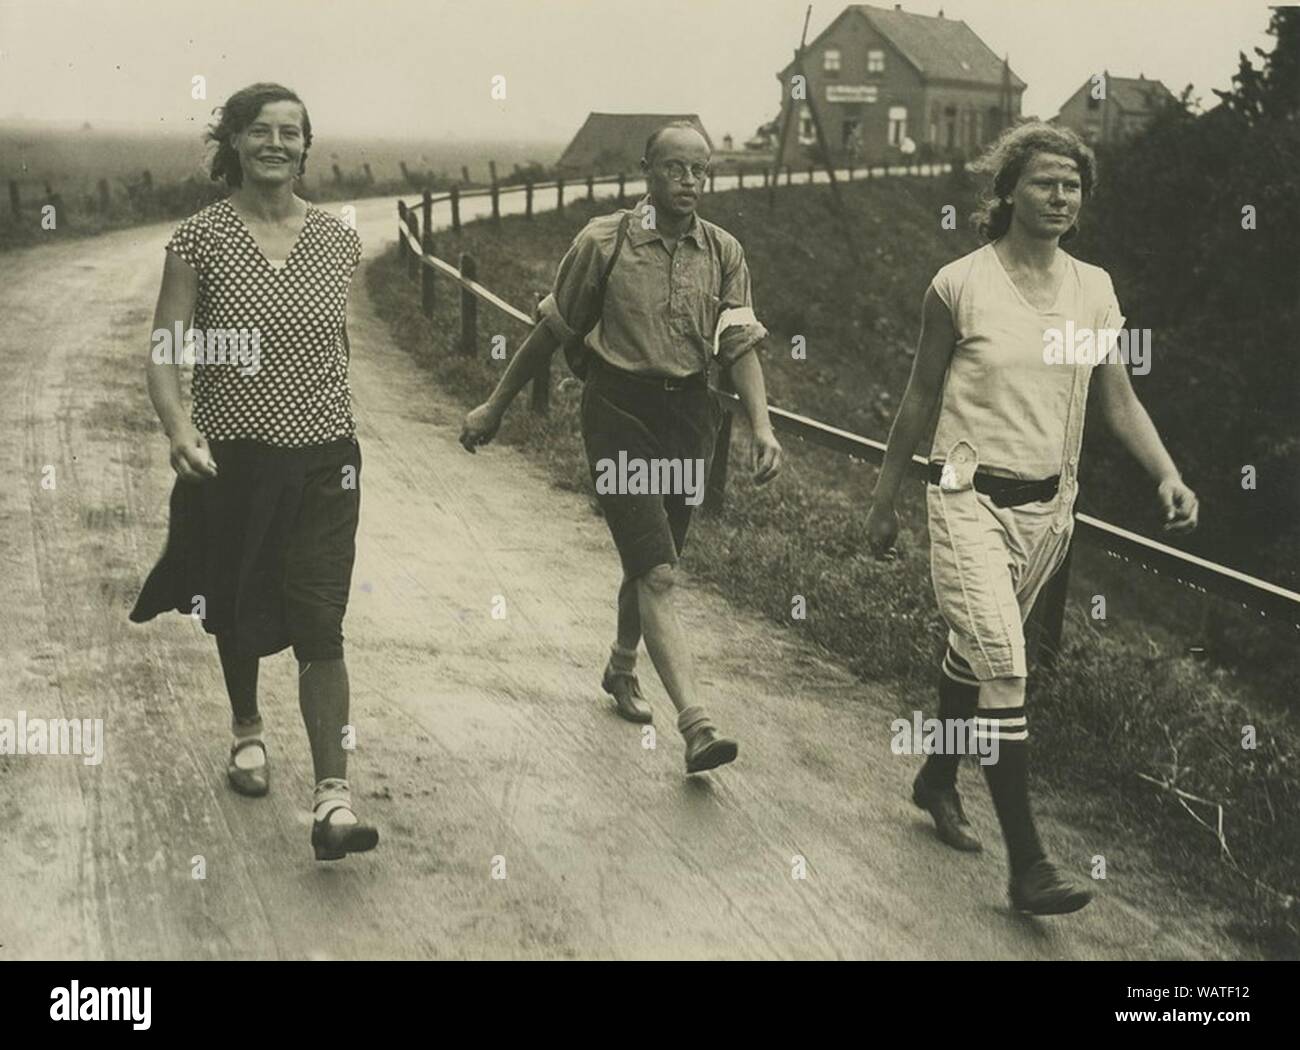 Drie burgerdeelnemers onderweg tijdens de 20e vierdaagse. Stock Photo